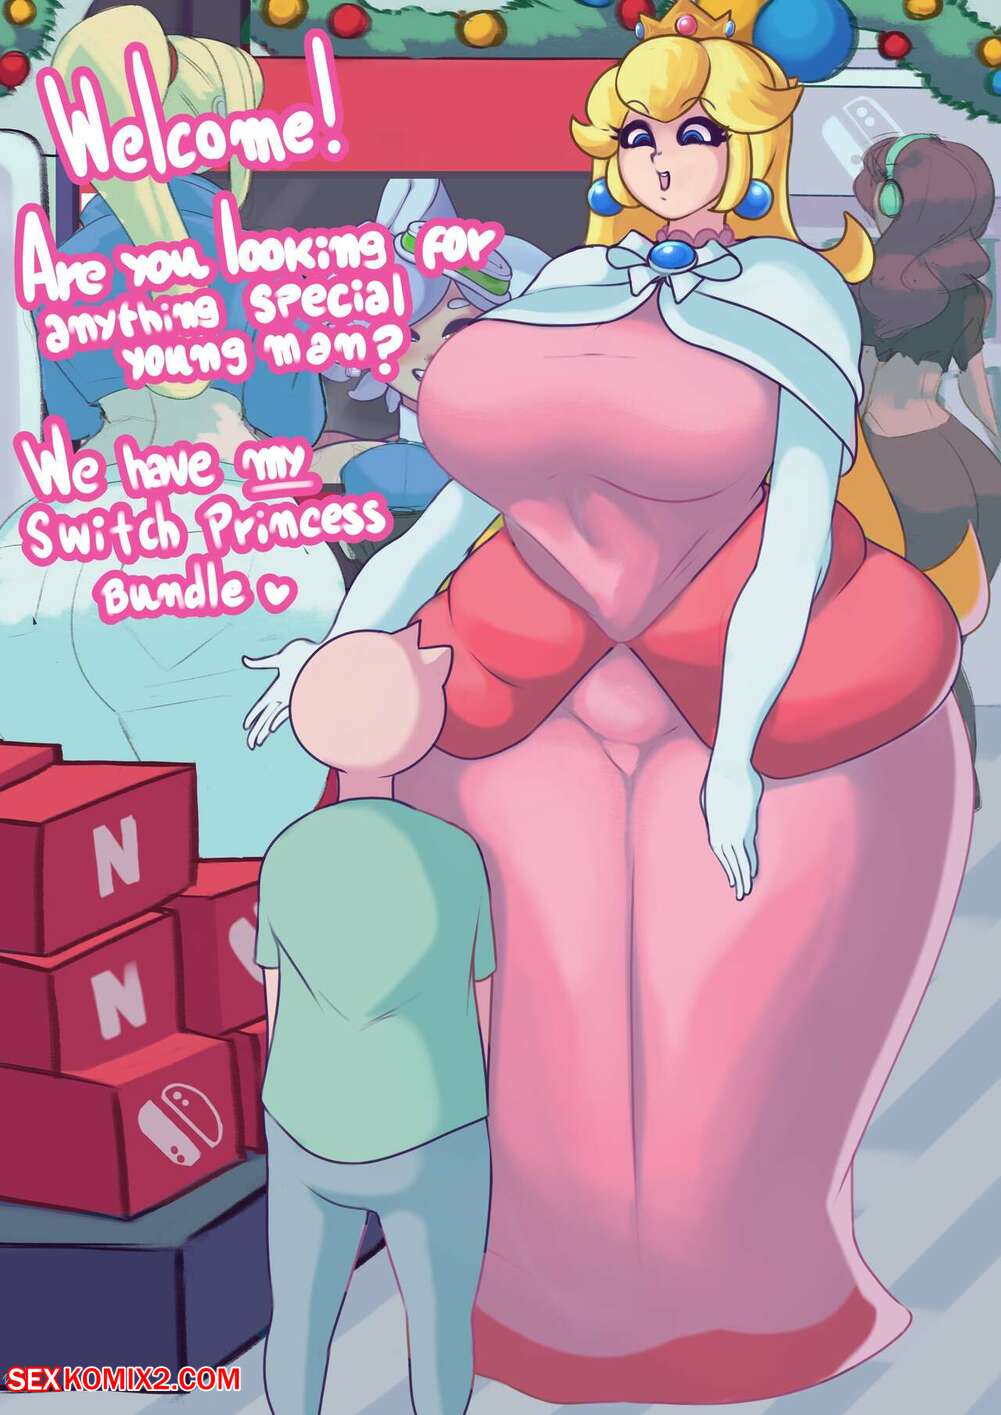 âœ…ï¸ Porn comic Switch Princess. Dedalo. Sex comic busty blonde was | Porn  comics in English for adults only | sexkomix2.com